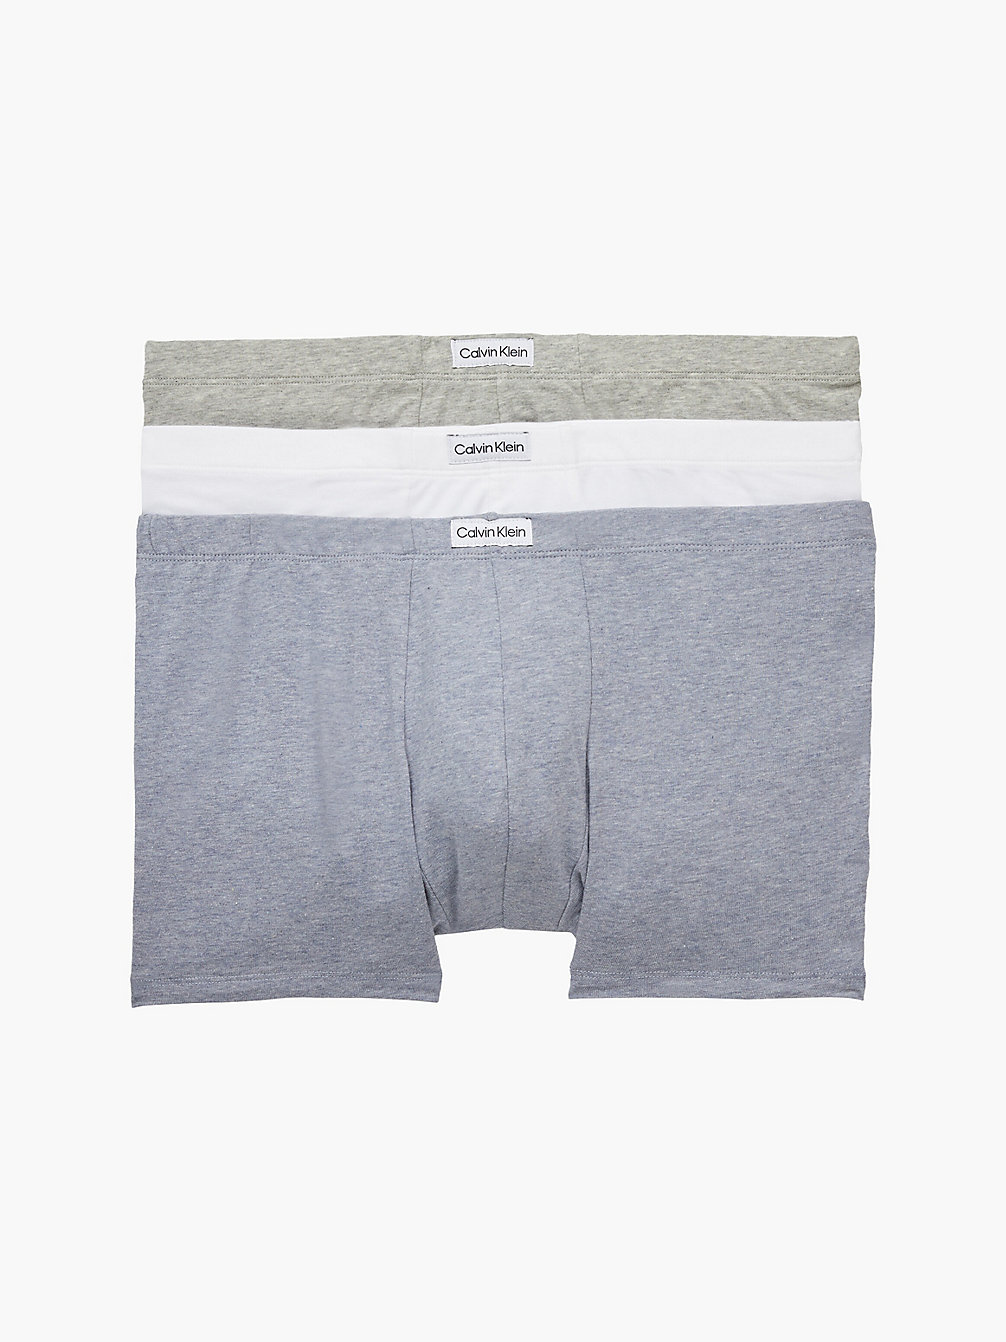 BLU CHBR HTHR/GRY HTHR/WHT 3 Pack Trunks - Pure Cotton undefined men Calvin Klein